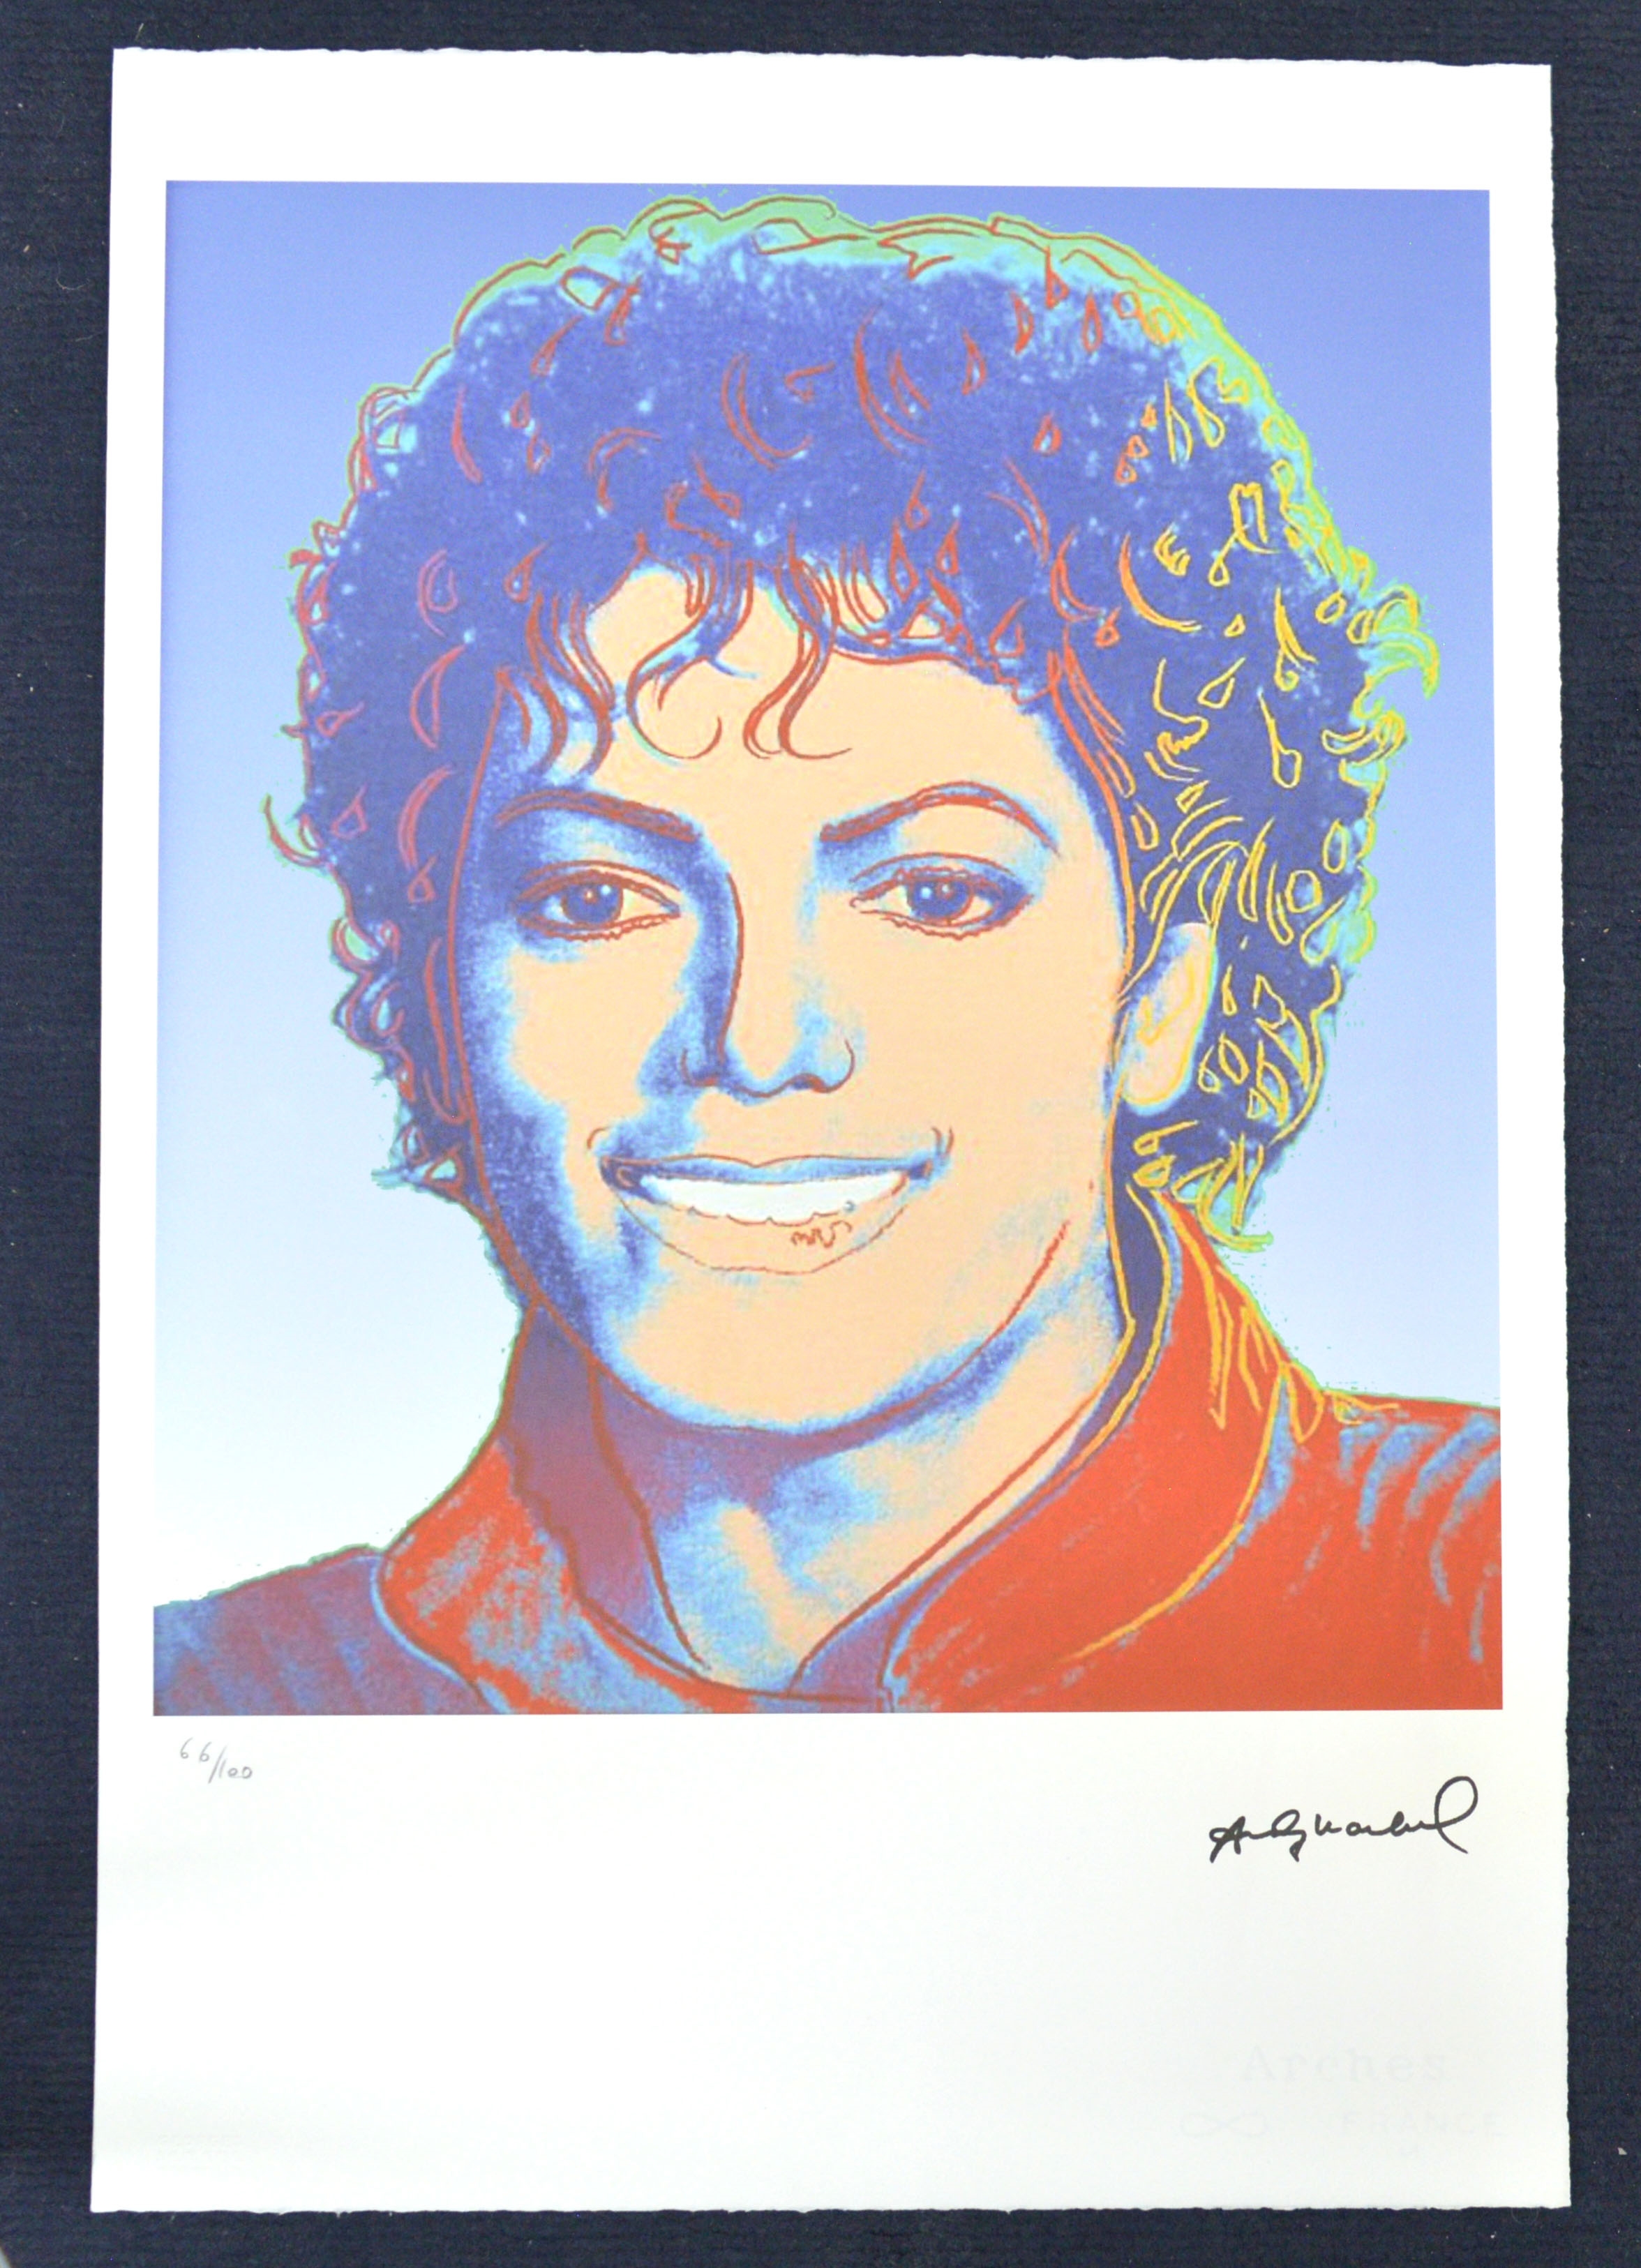 Michael Jackson - Andy Warhol